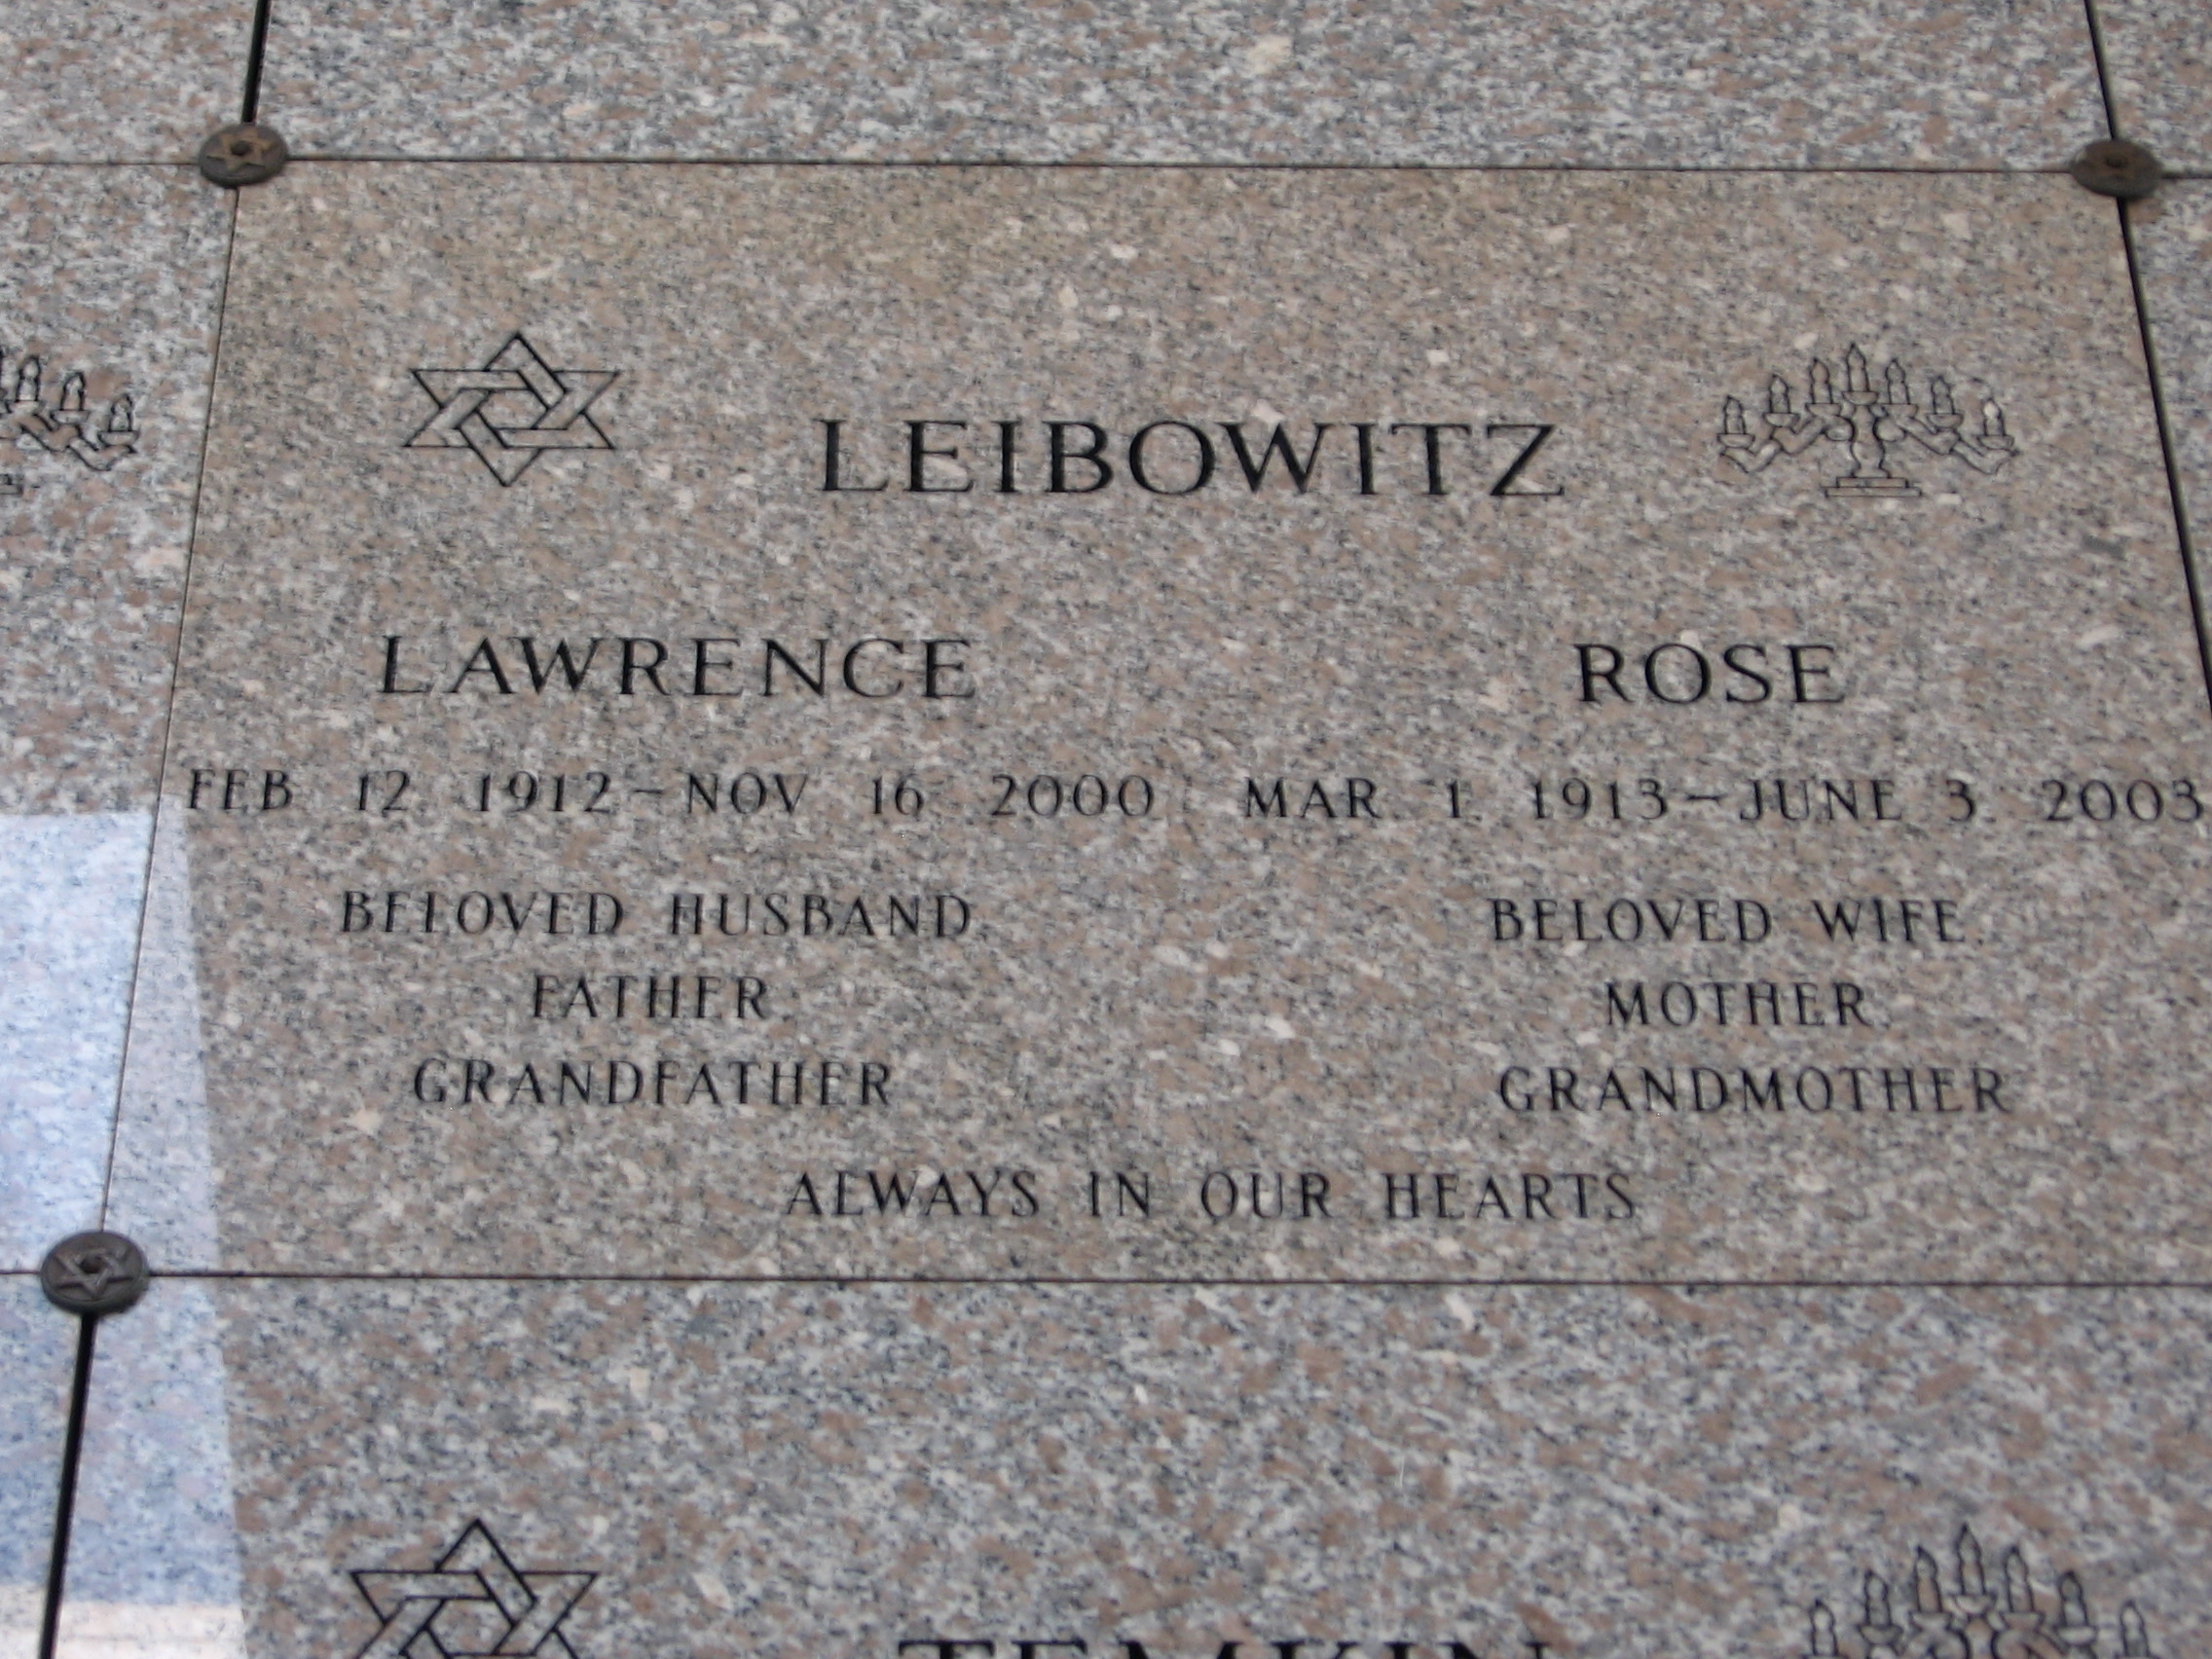 Lawrence Leibowitz